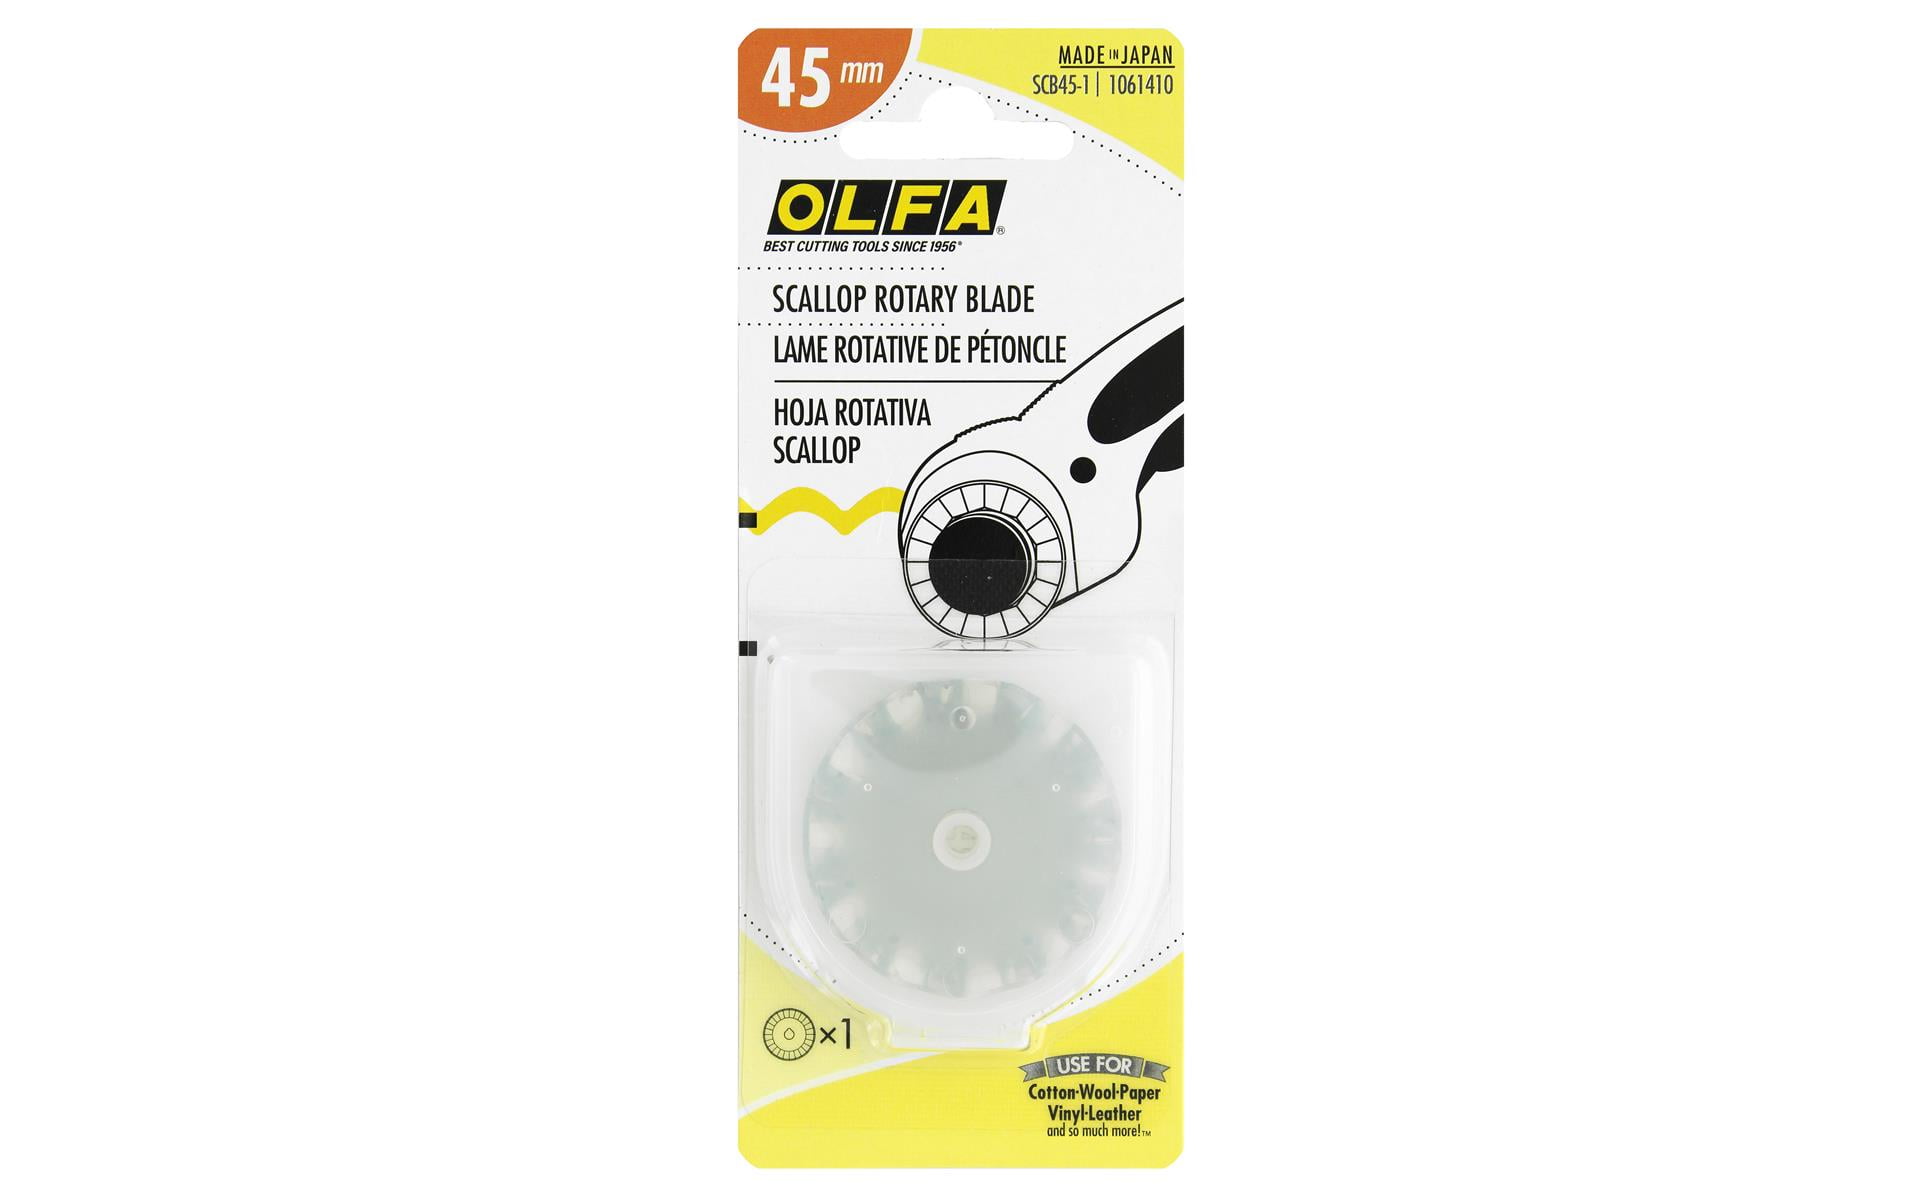 Olfa : Specialty Rotary Blades